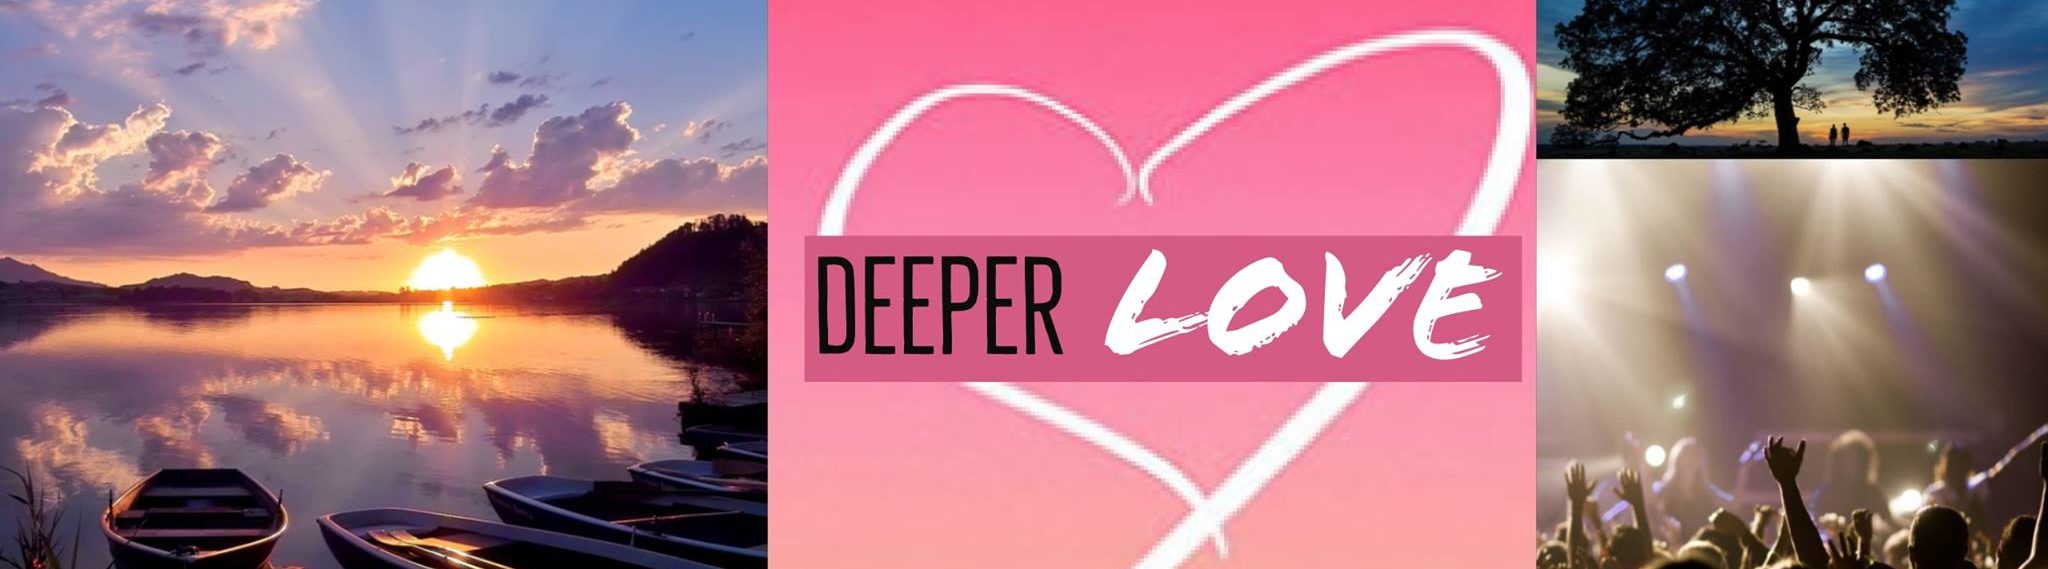 Deeper Love International